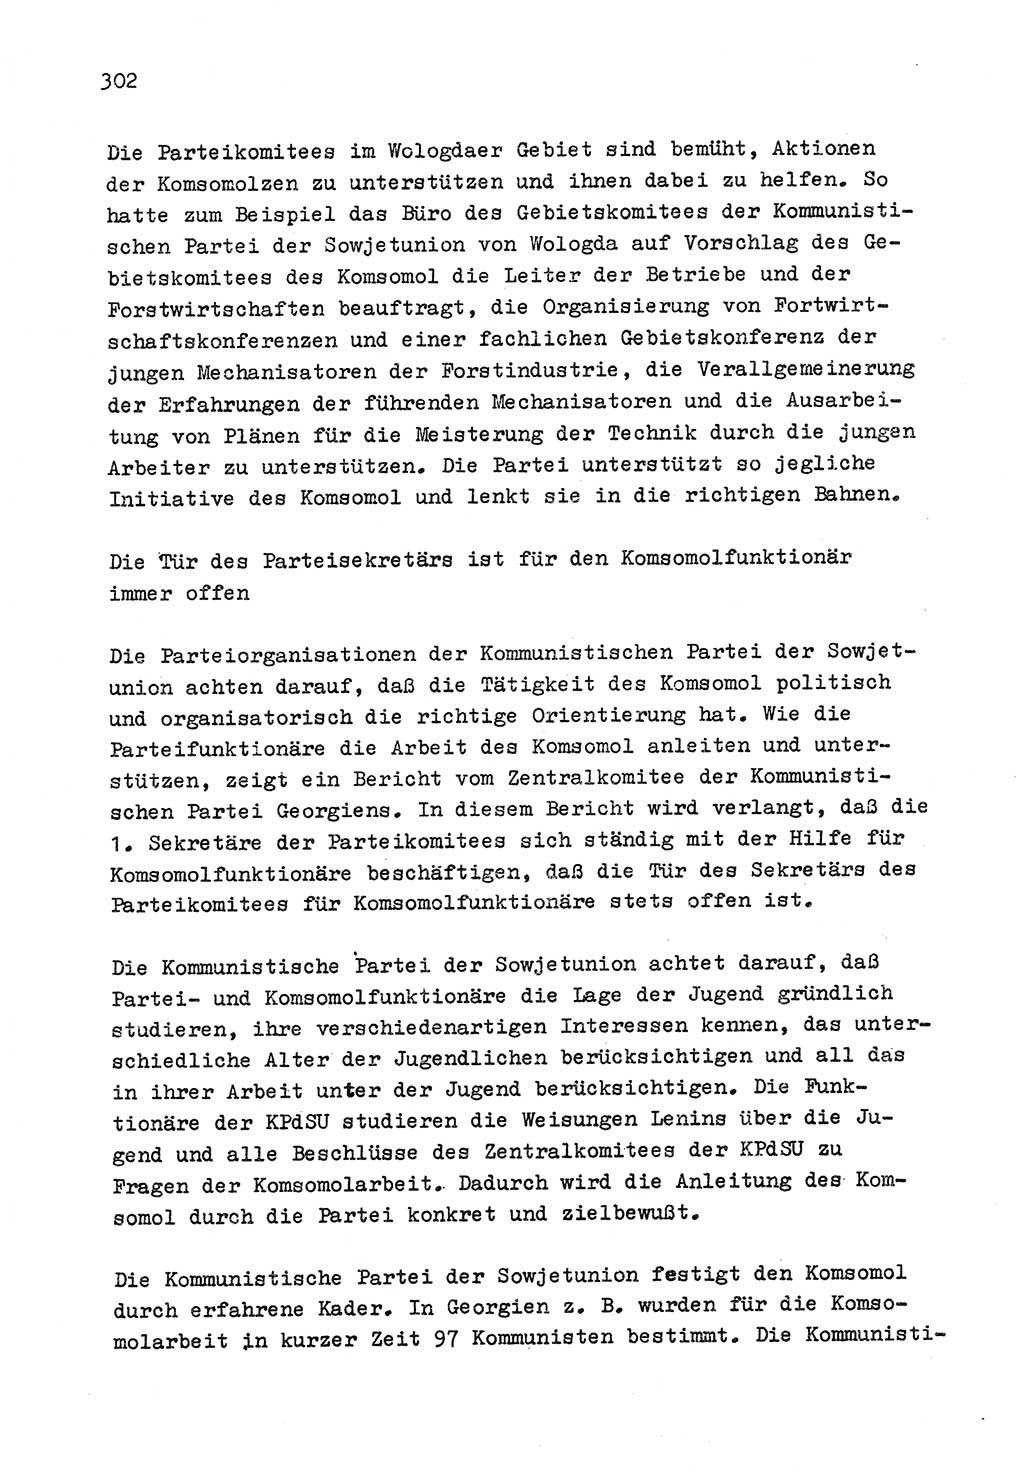 Zu Fragen der Parteiarbeit [Sozialistische Einheitspartei Deutschlands (SED) Deutsche Demokratische Republik (DDR)] 1979, Seite 302 (Fr. PA SED DDR 1979, S. 302)